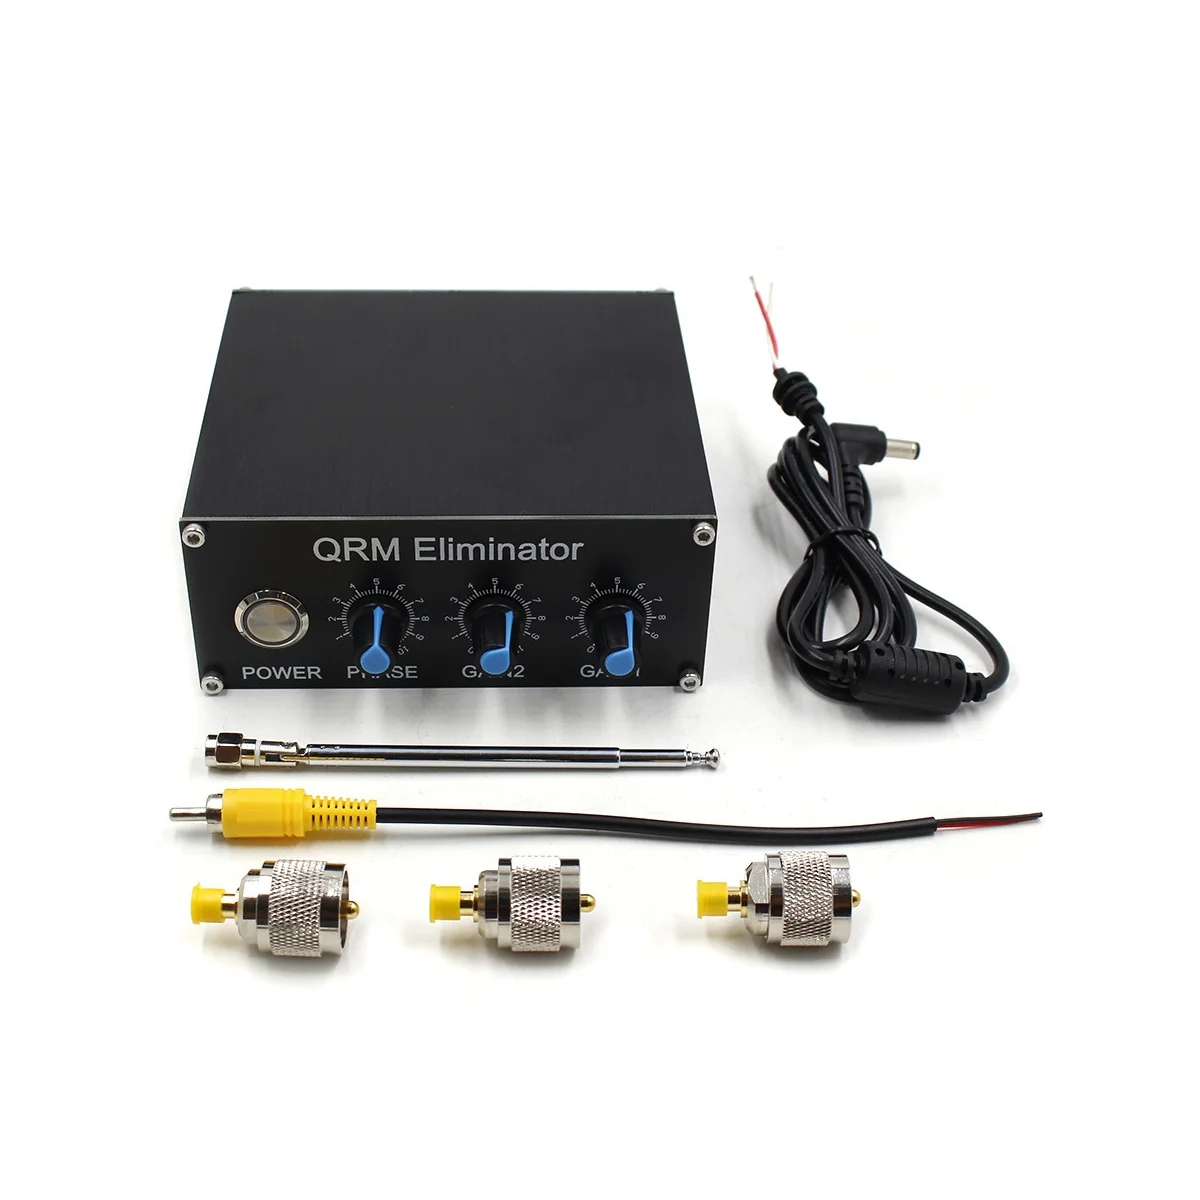 

Угломер сигнала QRM X-Phase HF Bands 1 МГц до 30 МГц, угломер сигнала QRM из алюминиевого сплава, Устранитель сигнала с циферблатом и ручкой